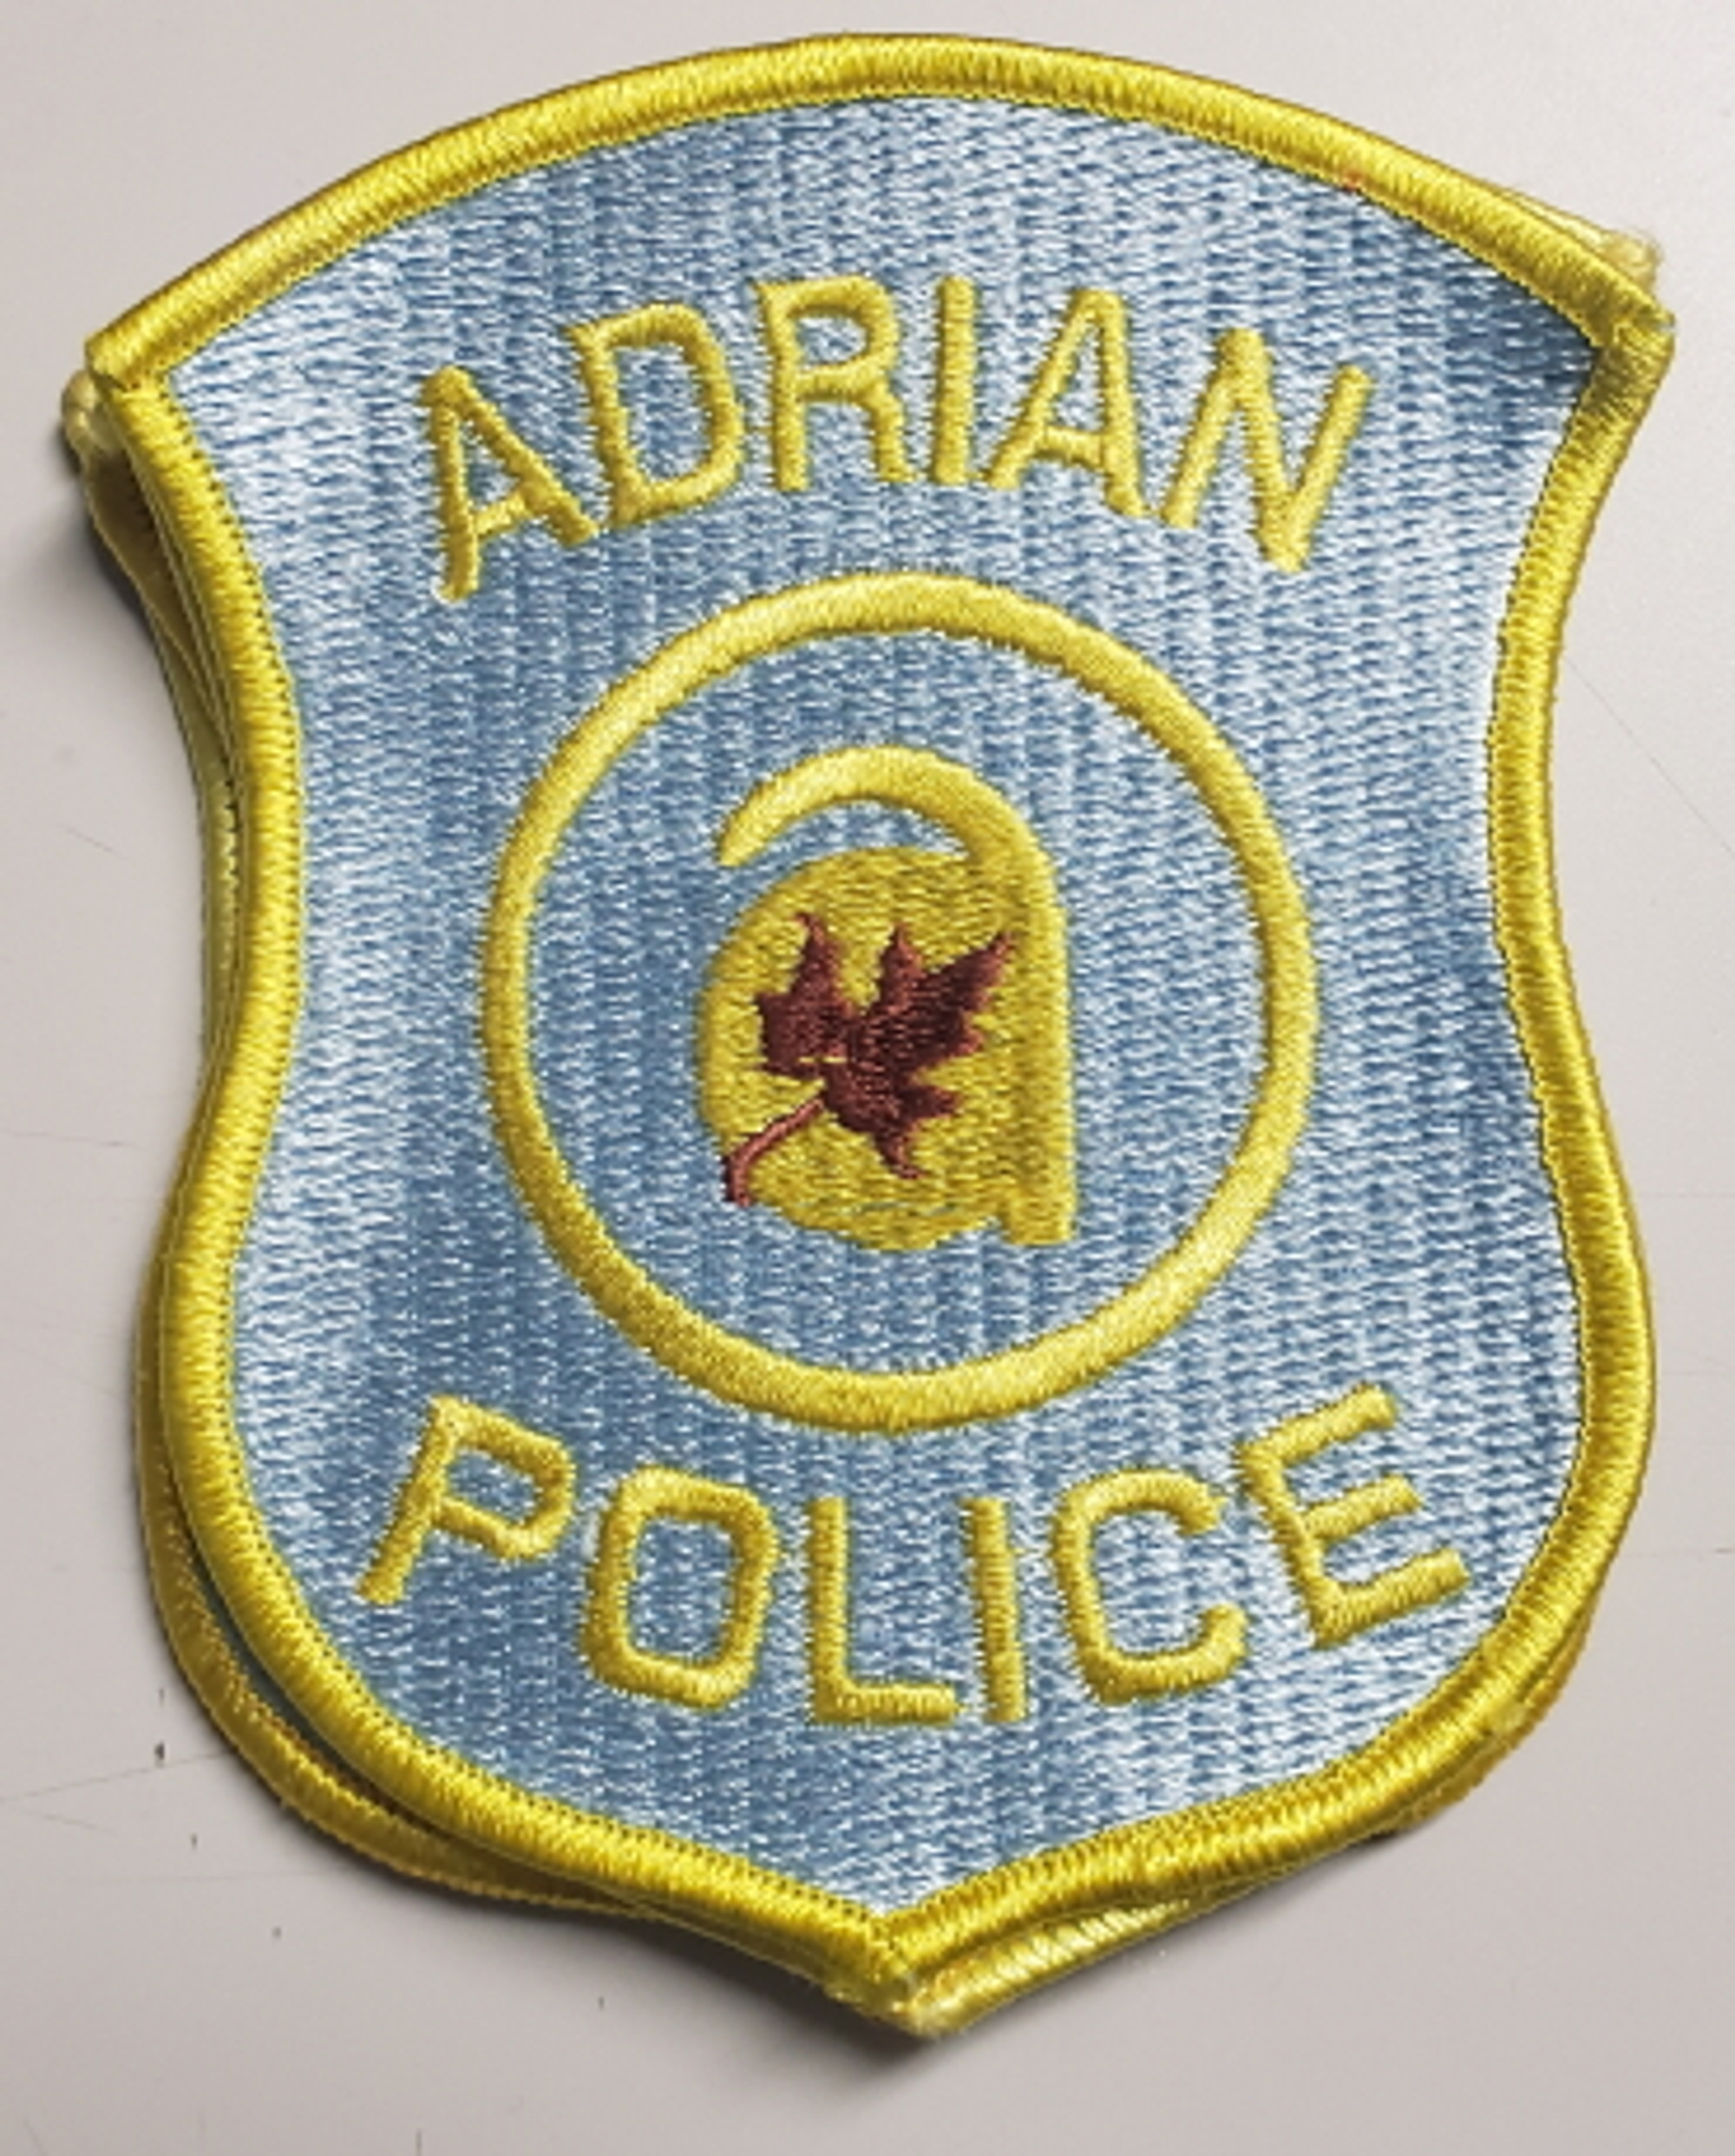 Adrian MI Police Patch